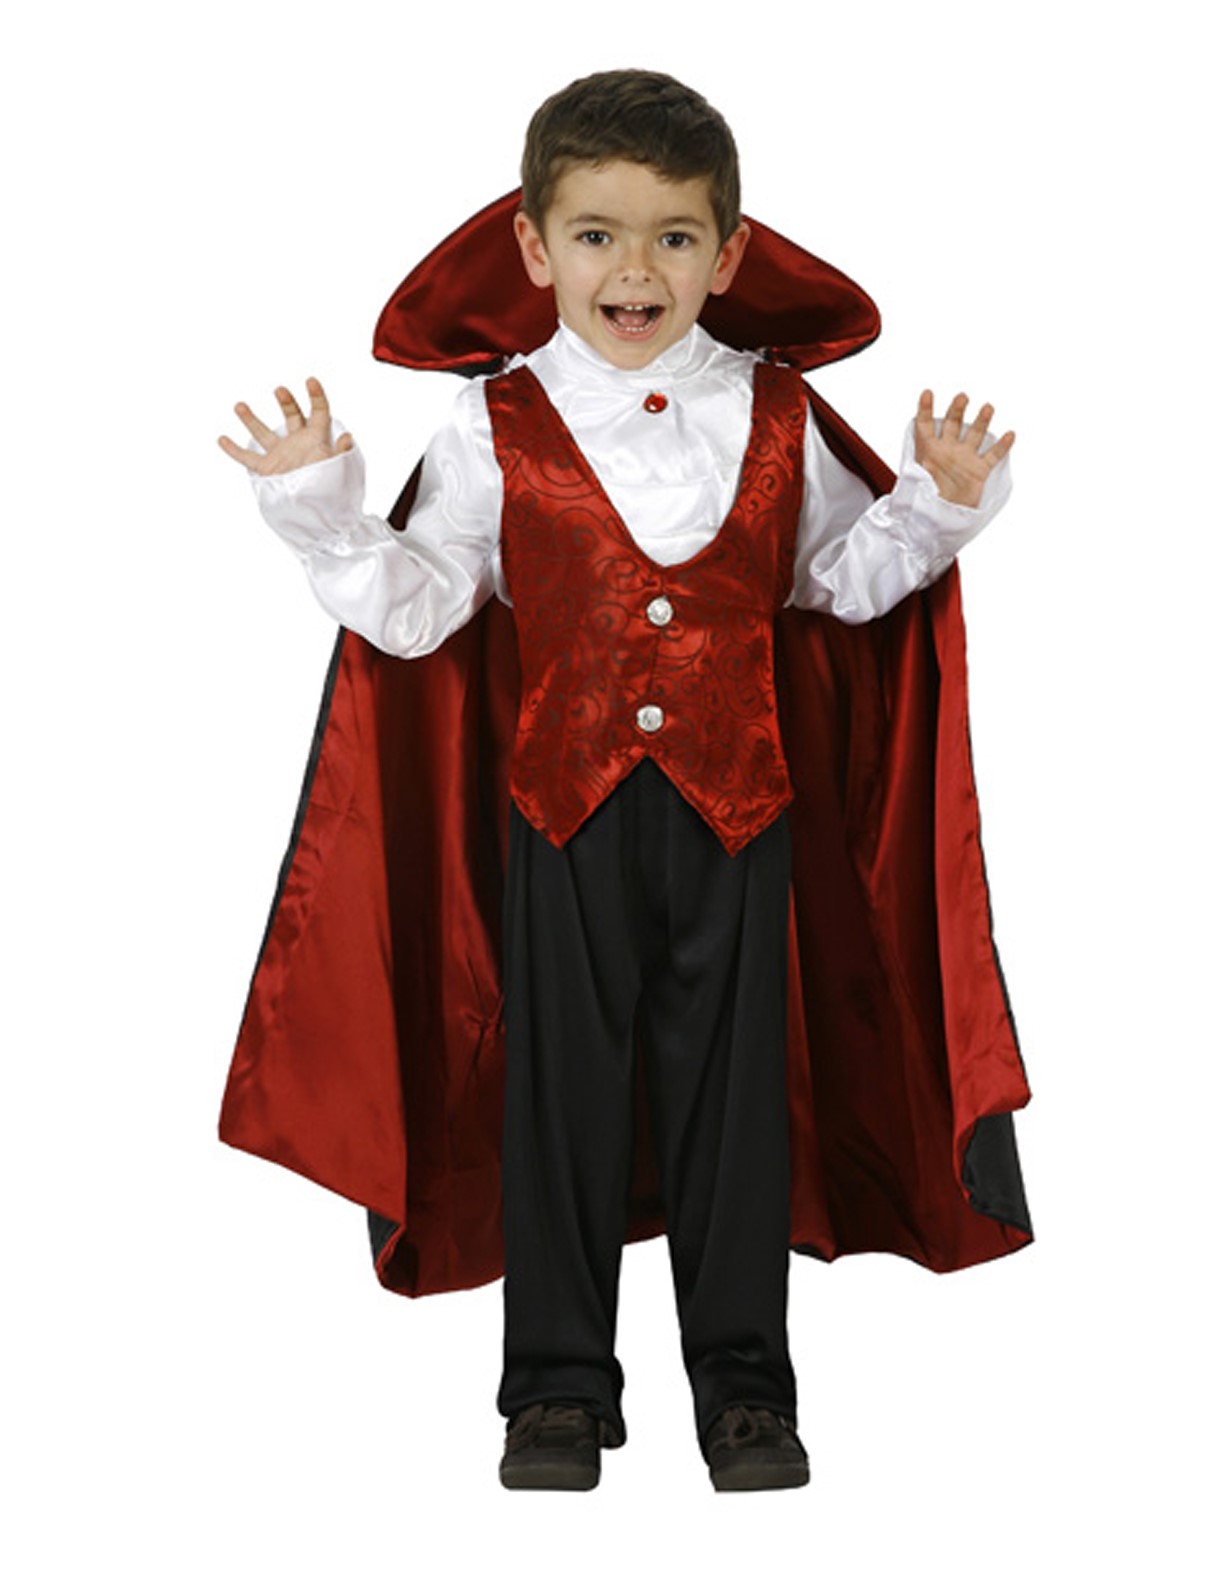 es bonito Inevitable contar Comprar Disfraz de Vampiro para niño en Halloween - carnavalandia